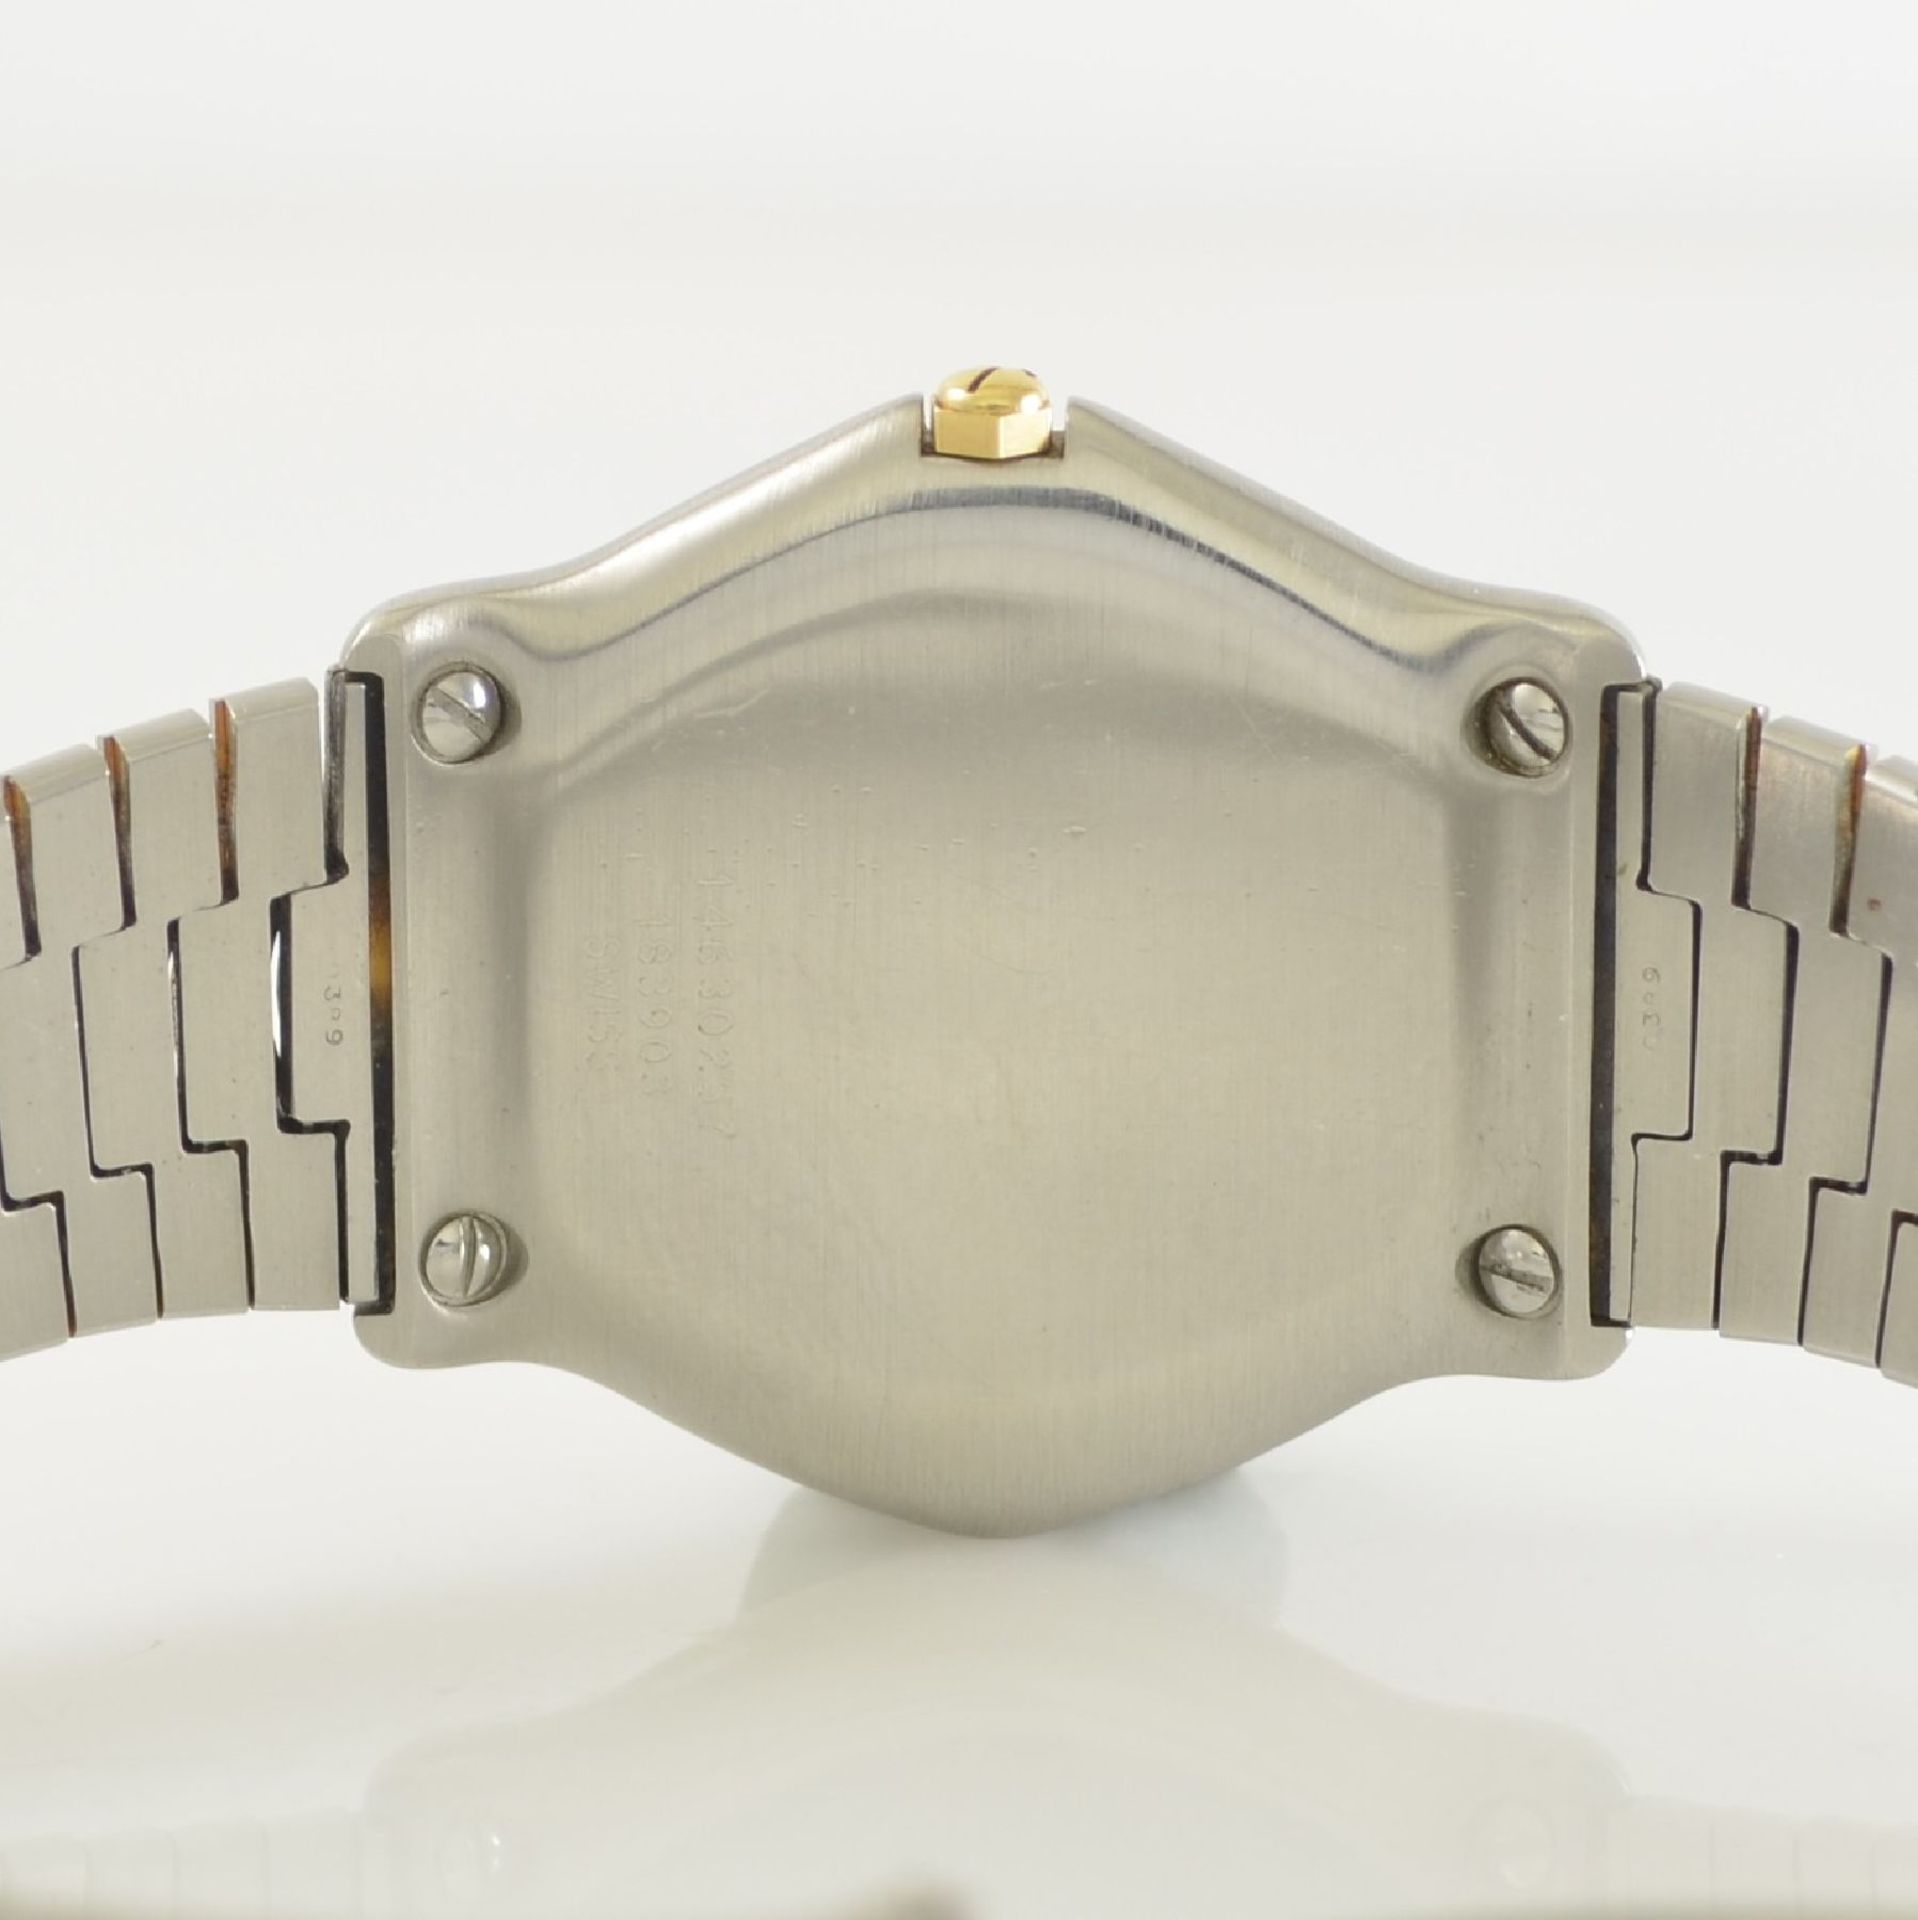 EBEL gents wristwatch in stainless steel/gold, Switzerland around 1990, quartz, monocoque- case, 5- - Bild 7 aus 7